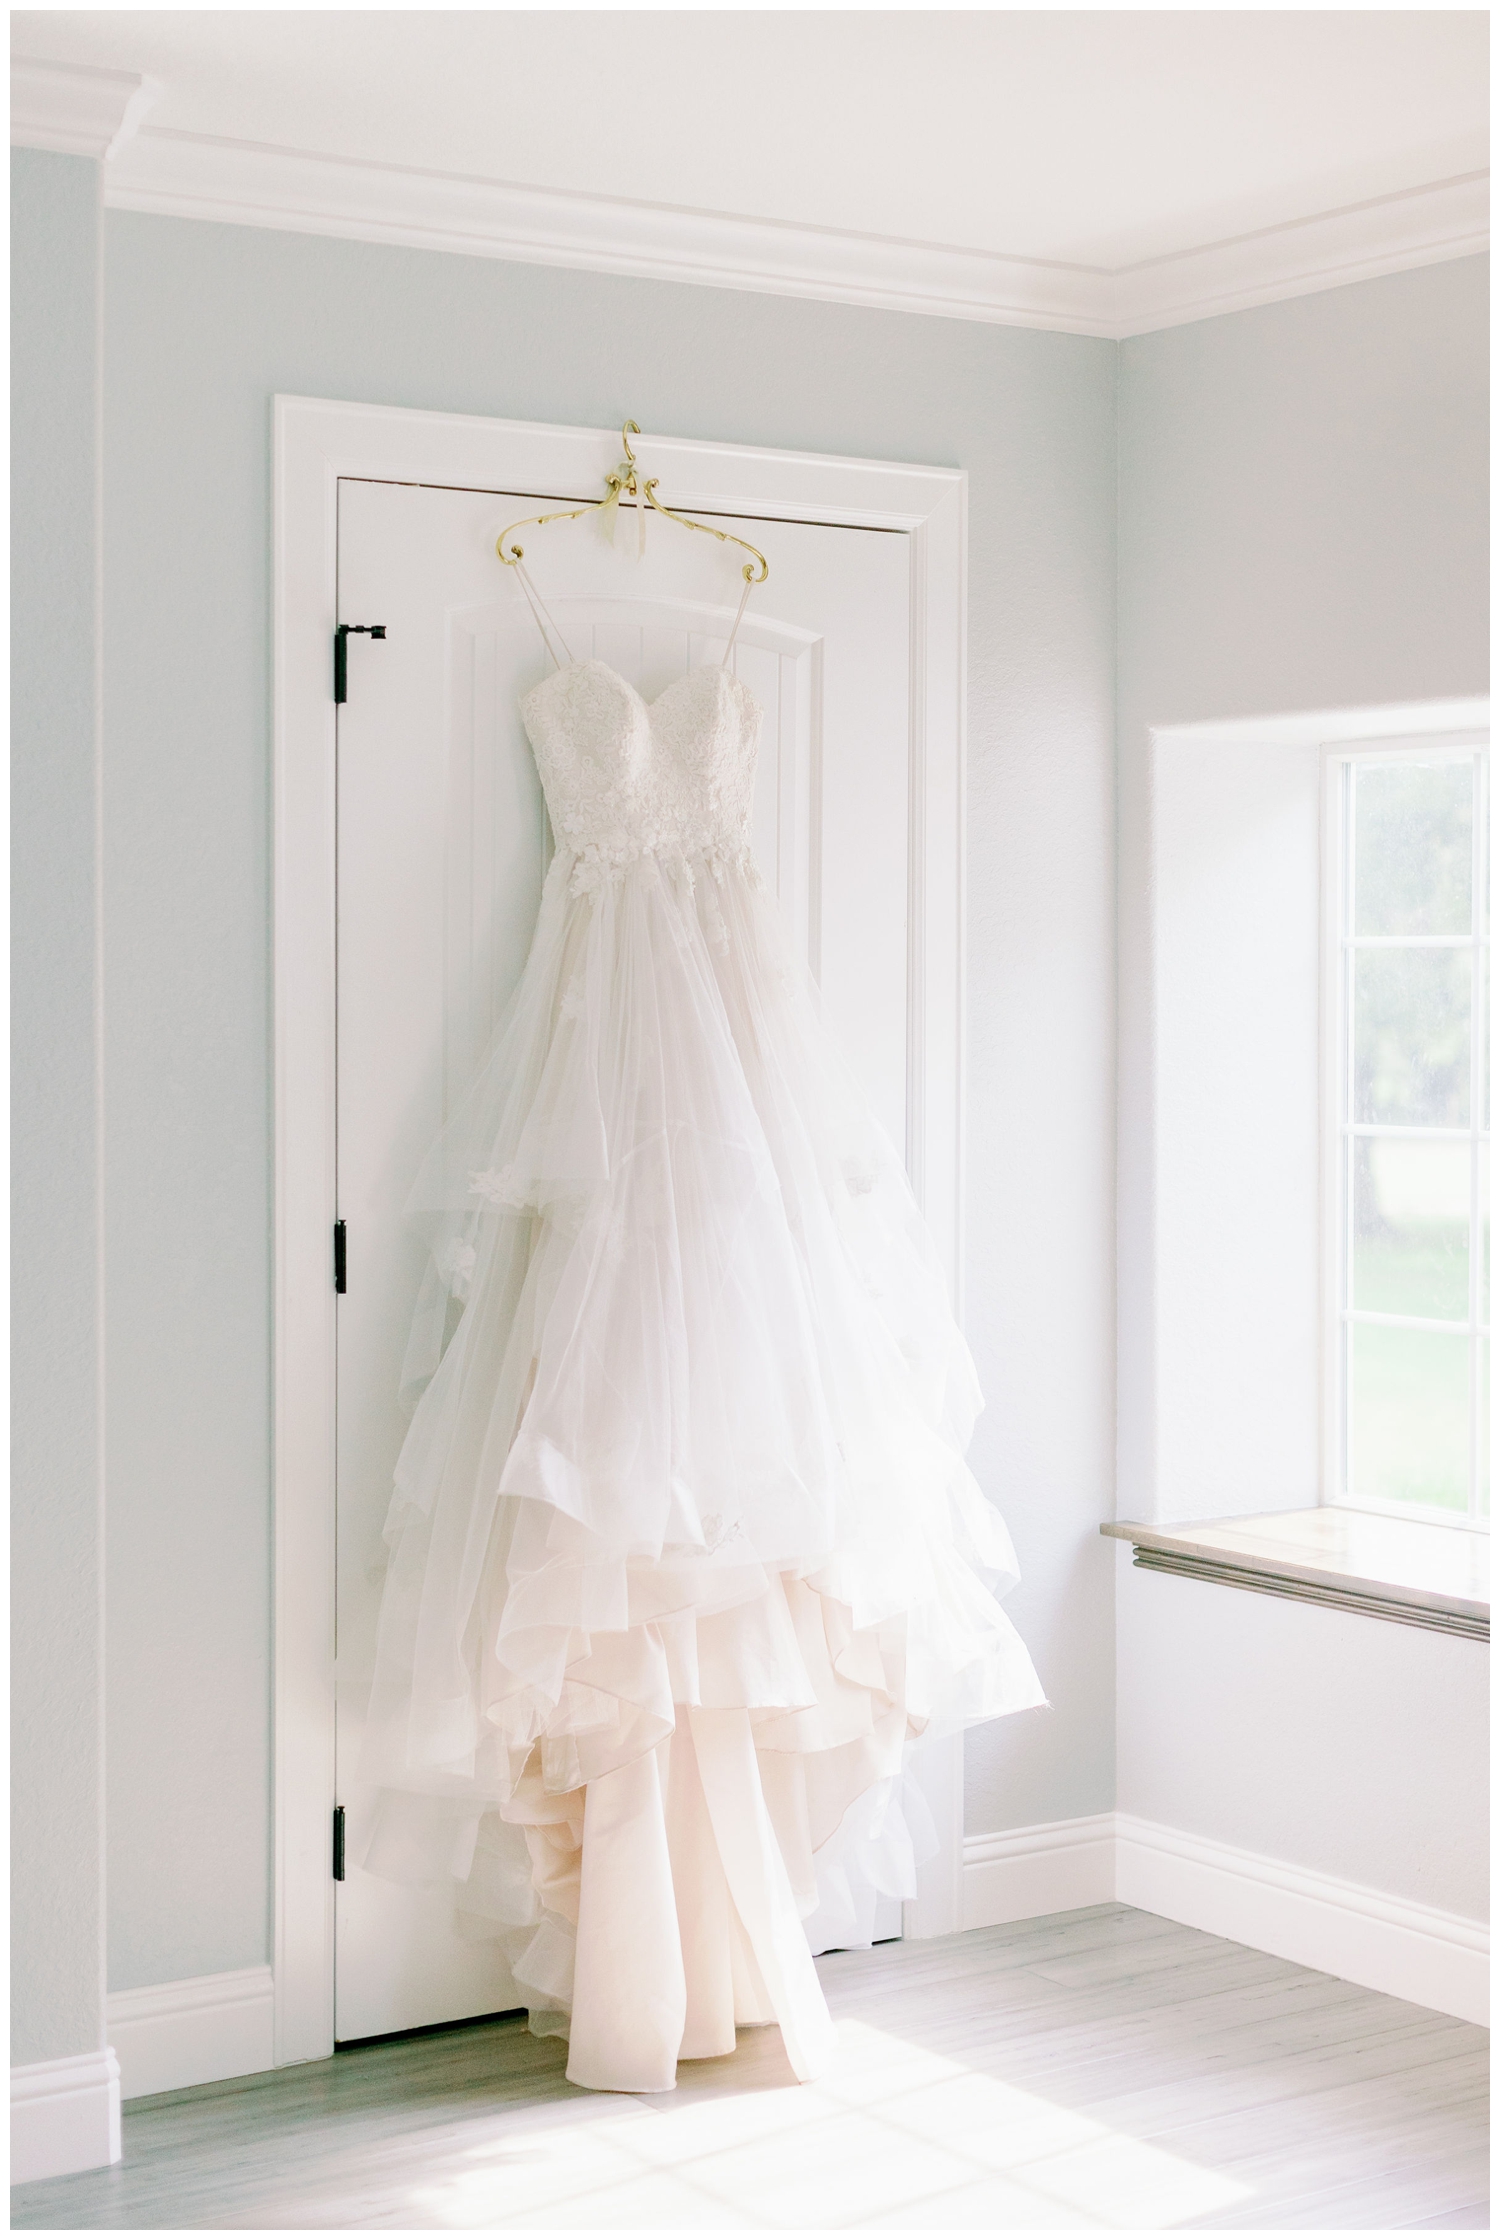 white wedding gown hangin on door